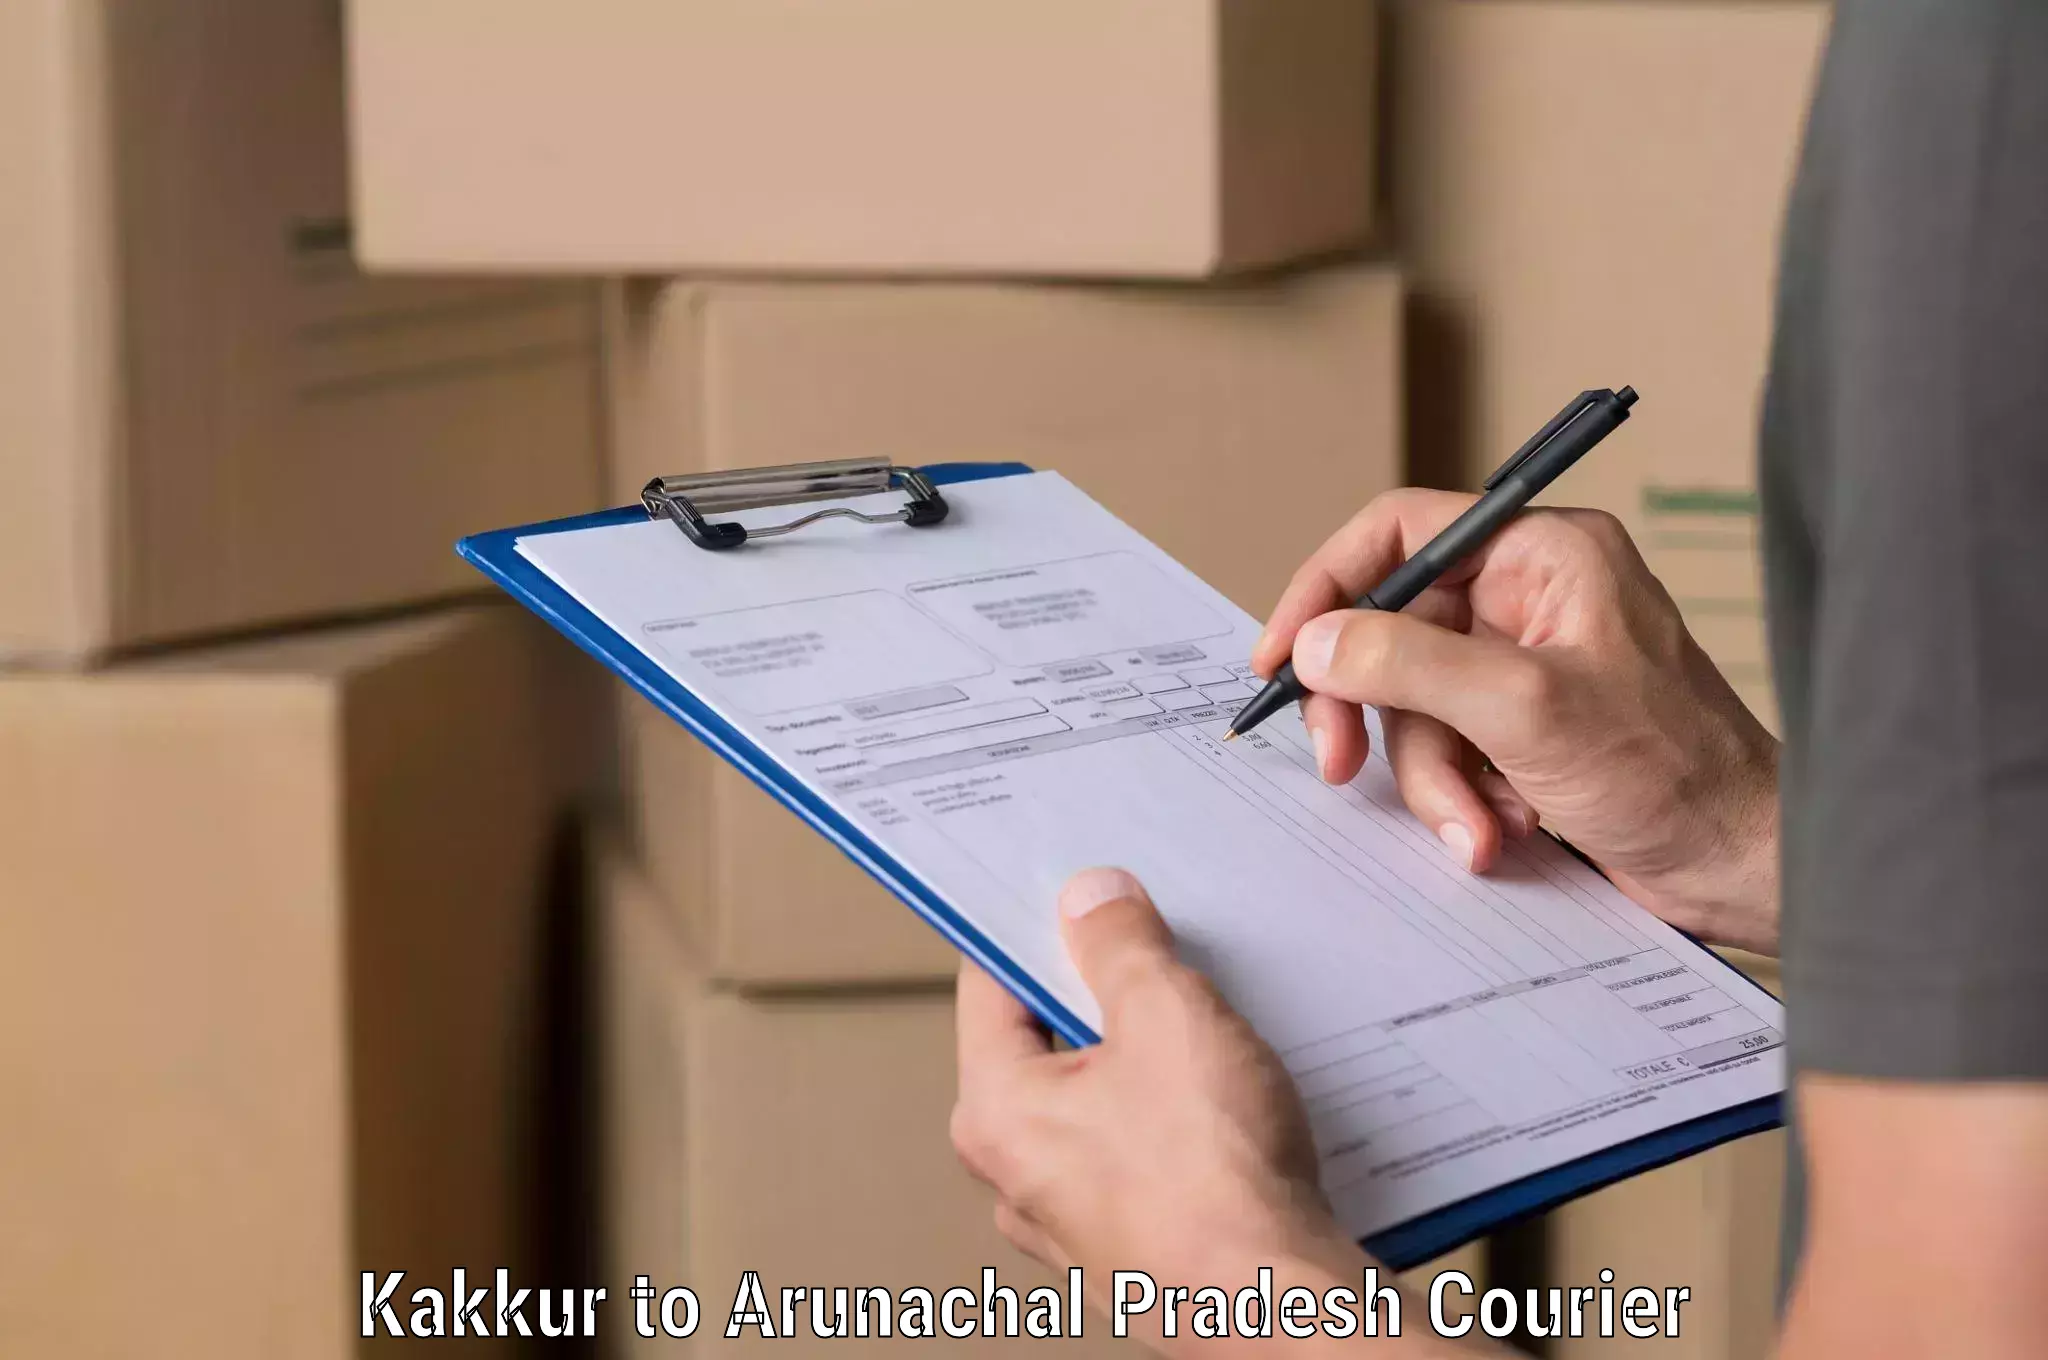 Custom courier packaging Kakkur to Bhalukpong